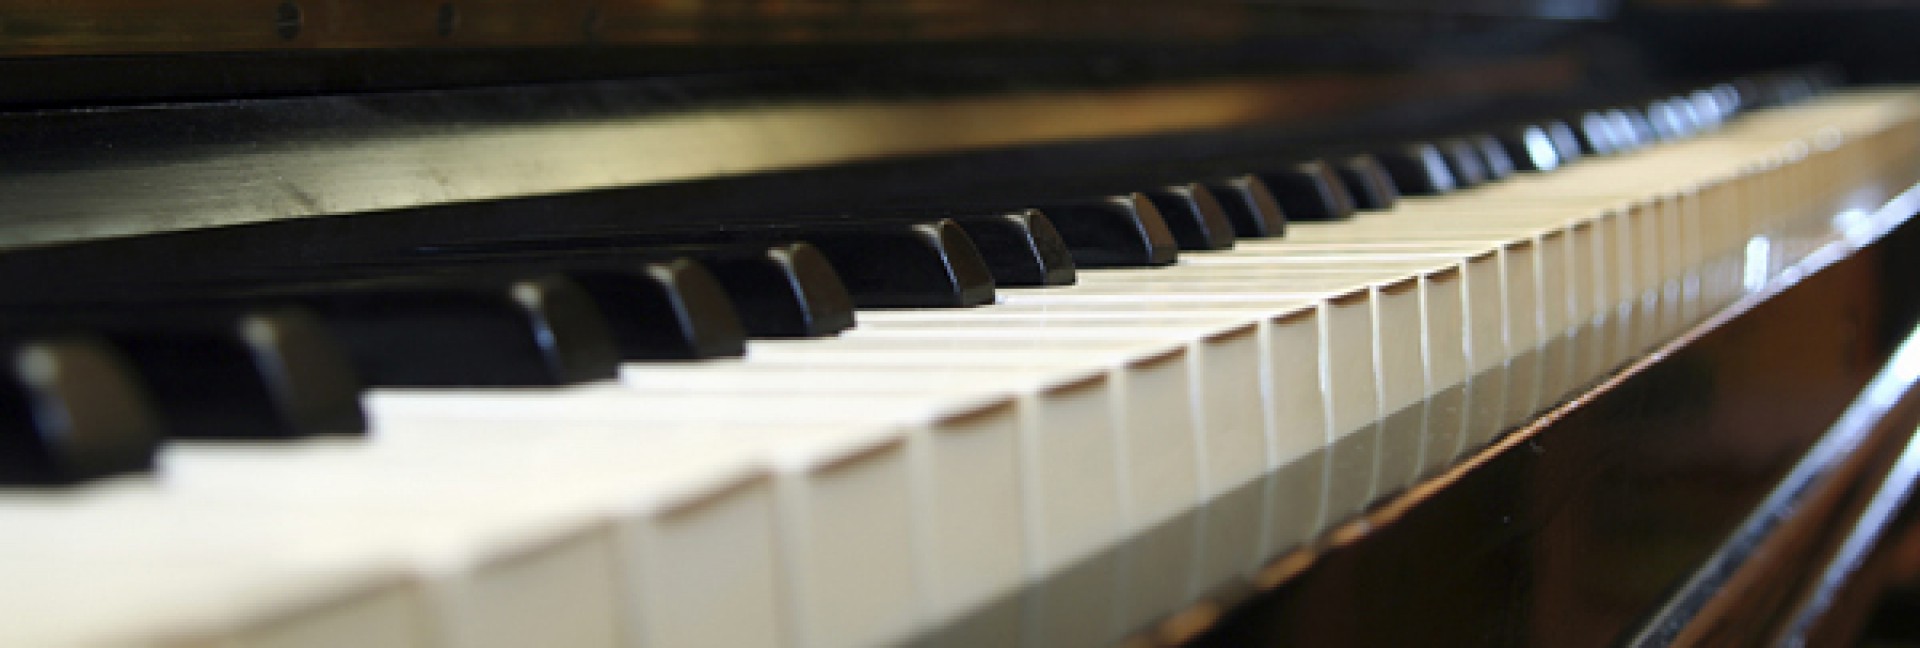 klavierunterricht in Offenbach - Wähle dein Wunschinstrument